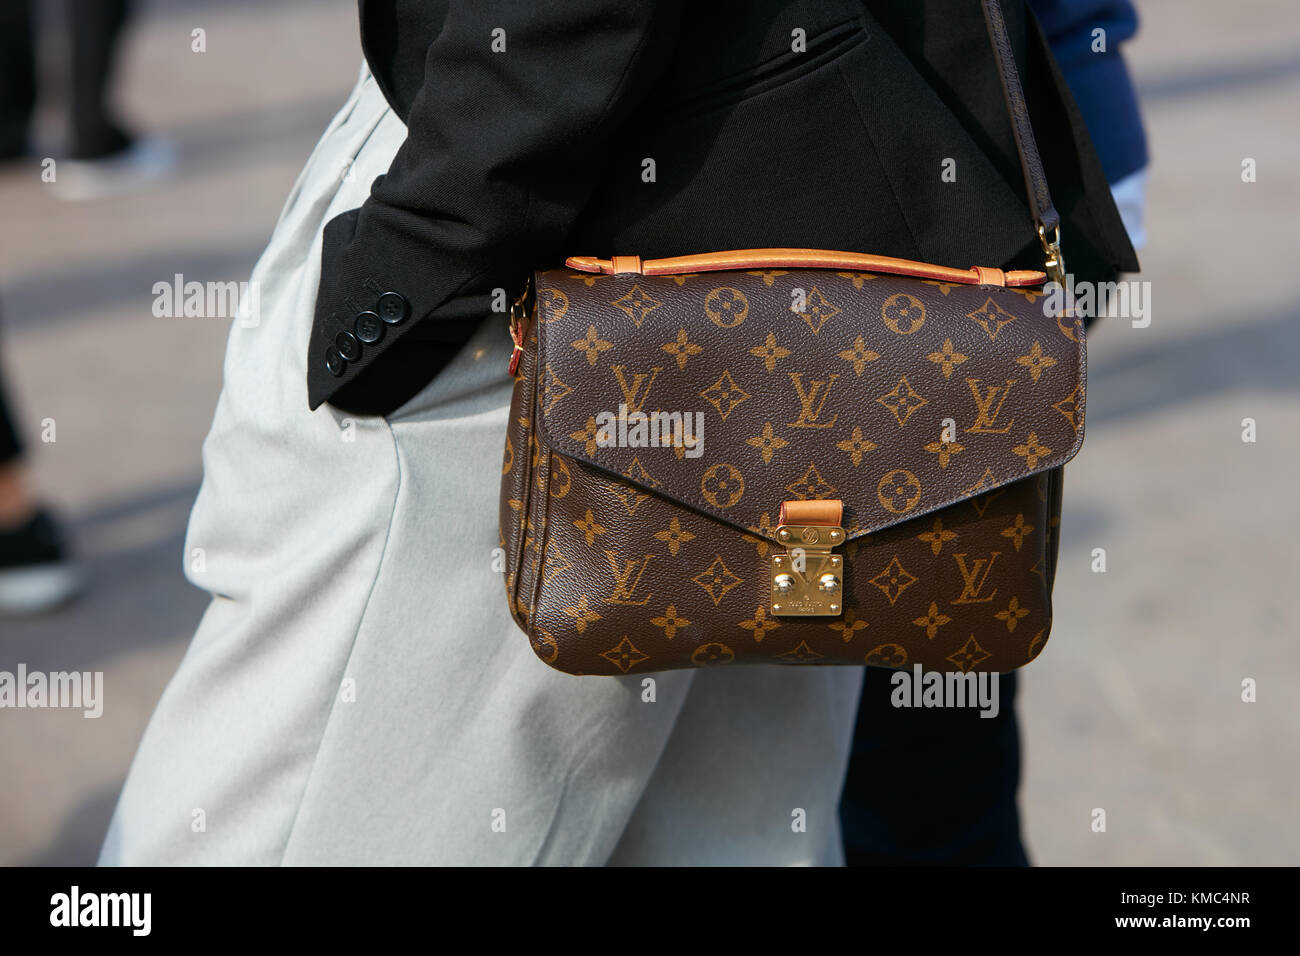 Milano, Italia - 20 settembre 2019: Donna Louis Vuitton con borsa